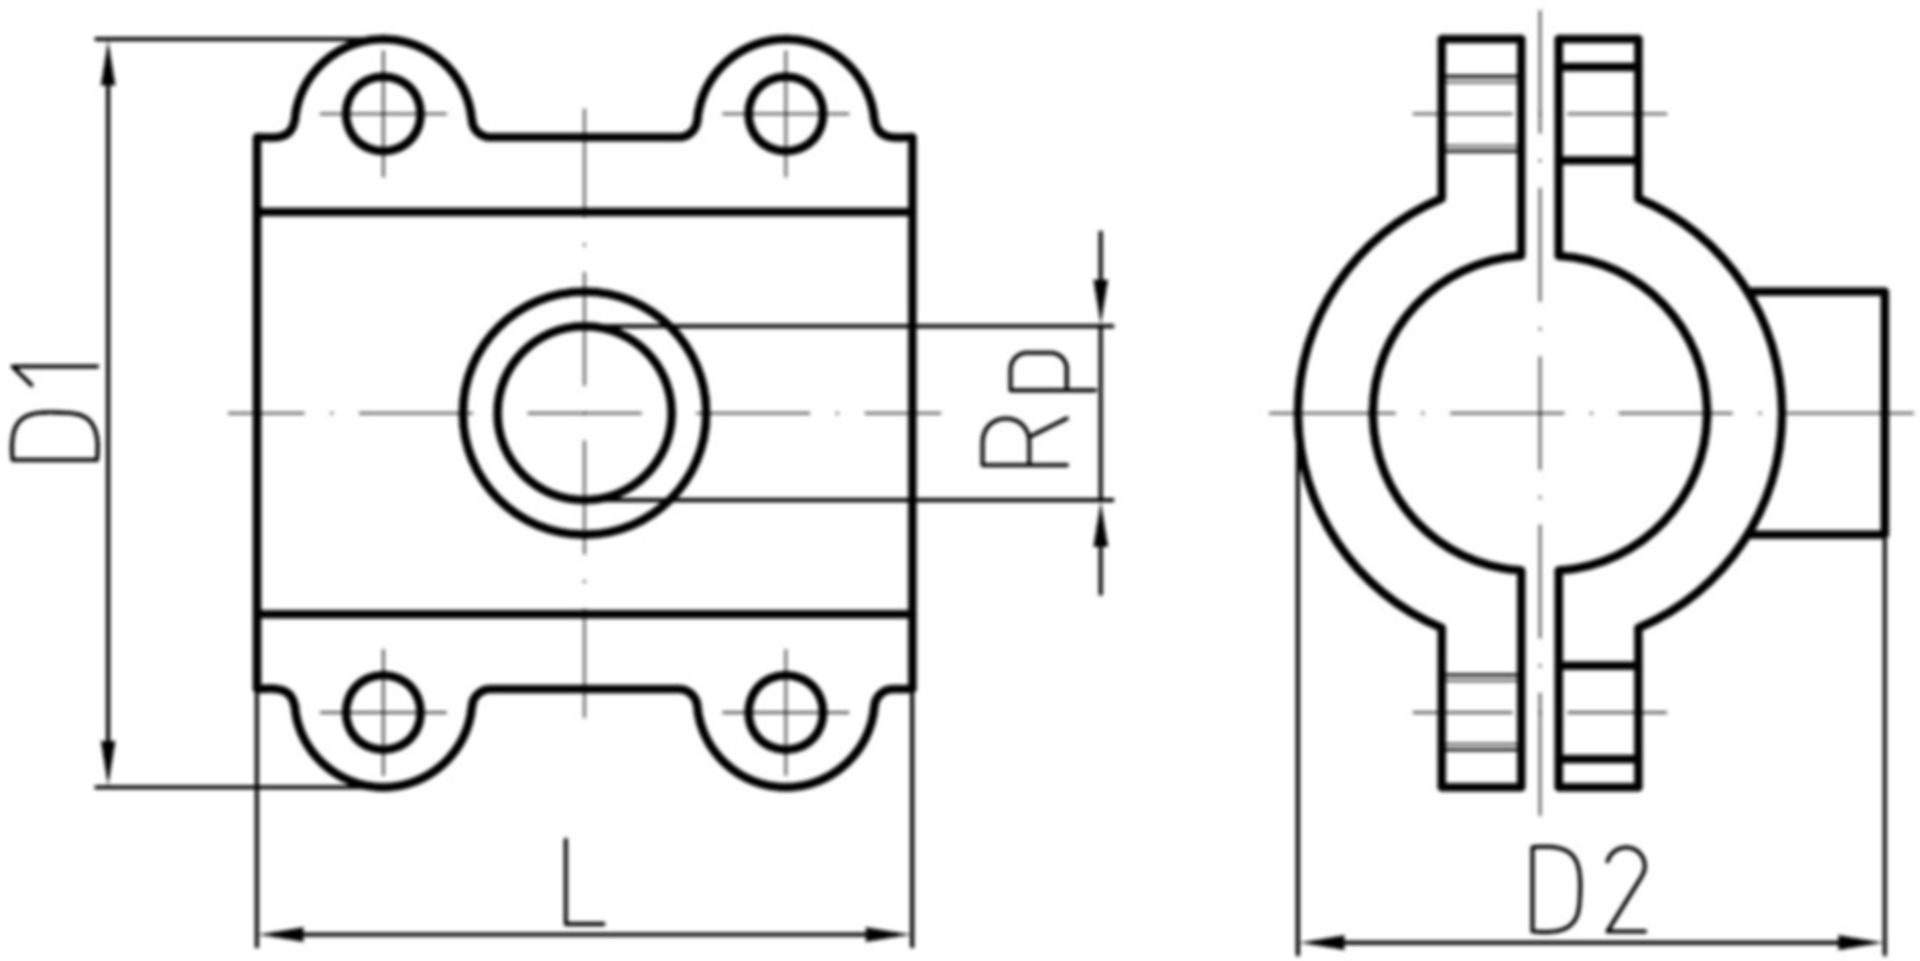 Anbohrschelle EPDM L=80mm 11/4"x3/4" 42.4mm verzinkt, Wasser 16 bar 775 732 065 - GF Primofit